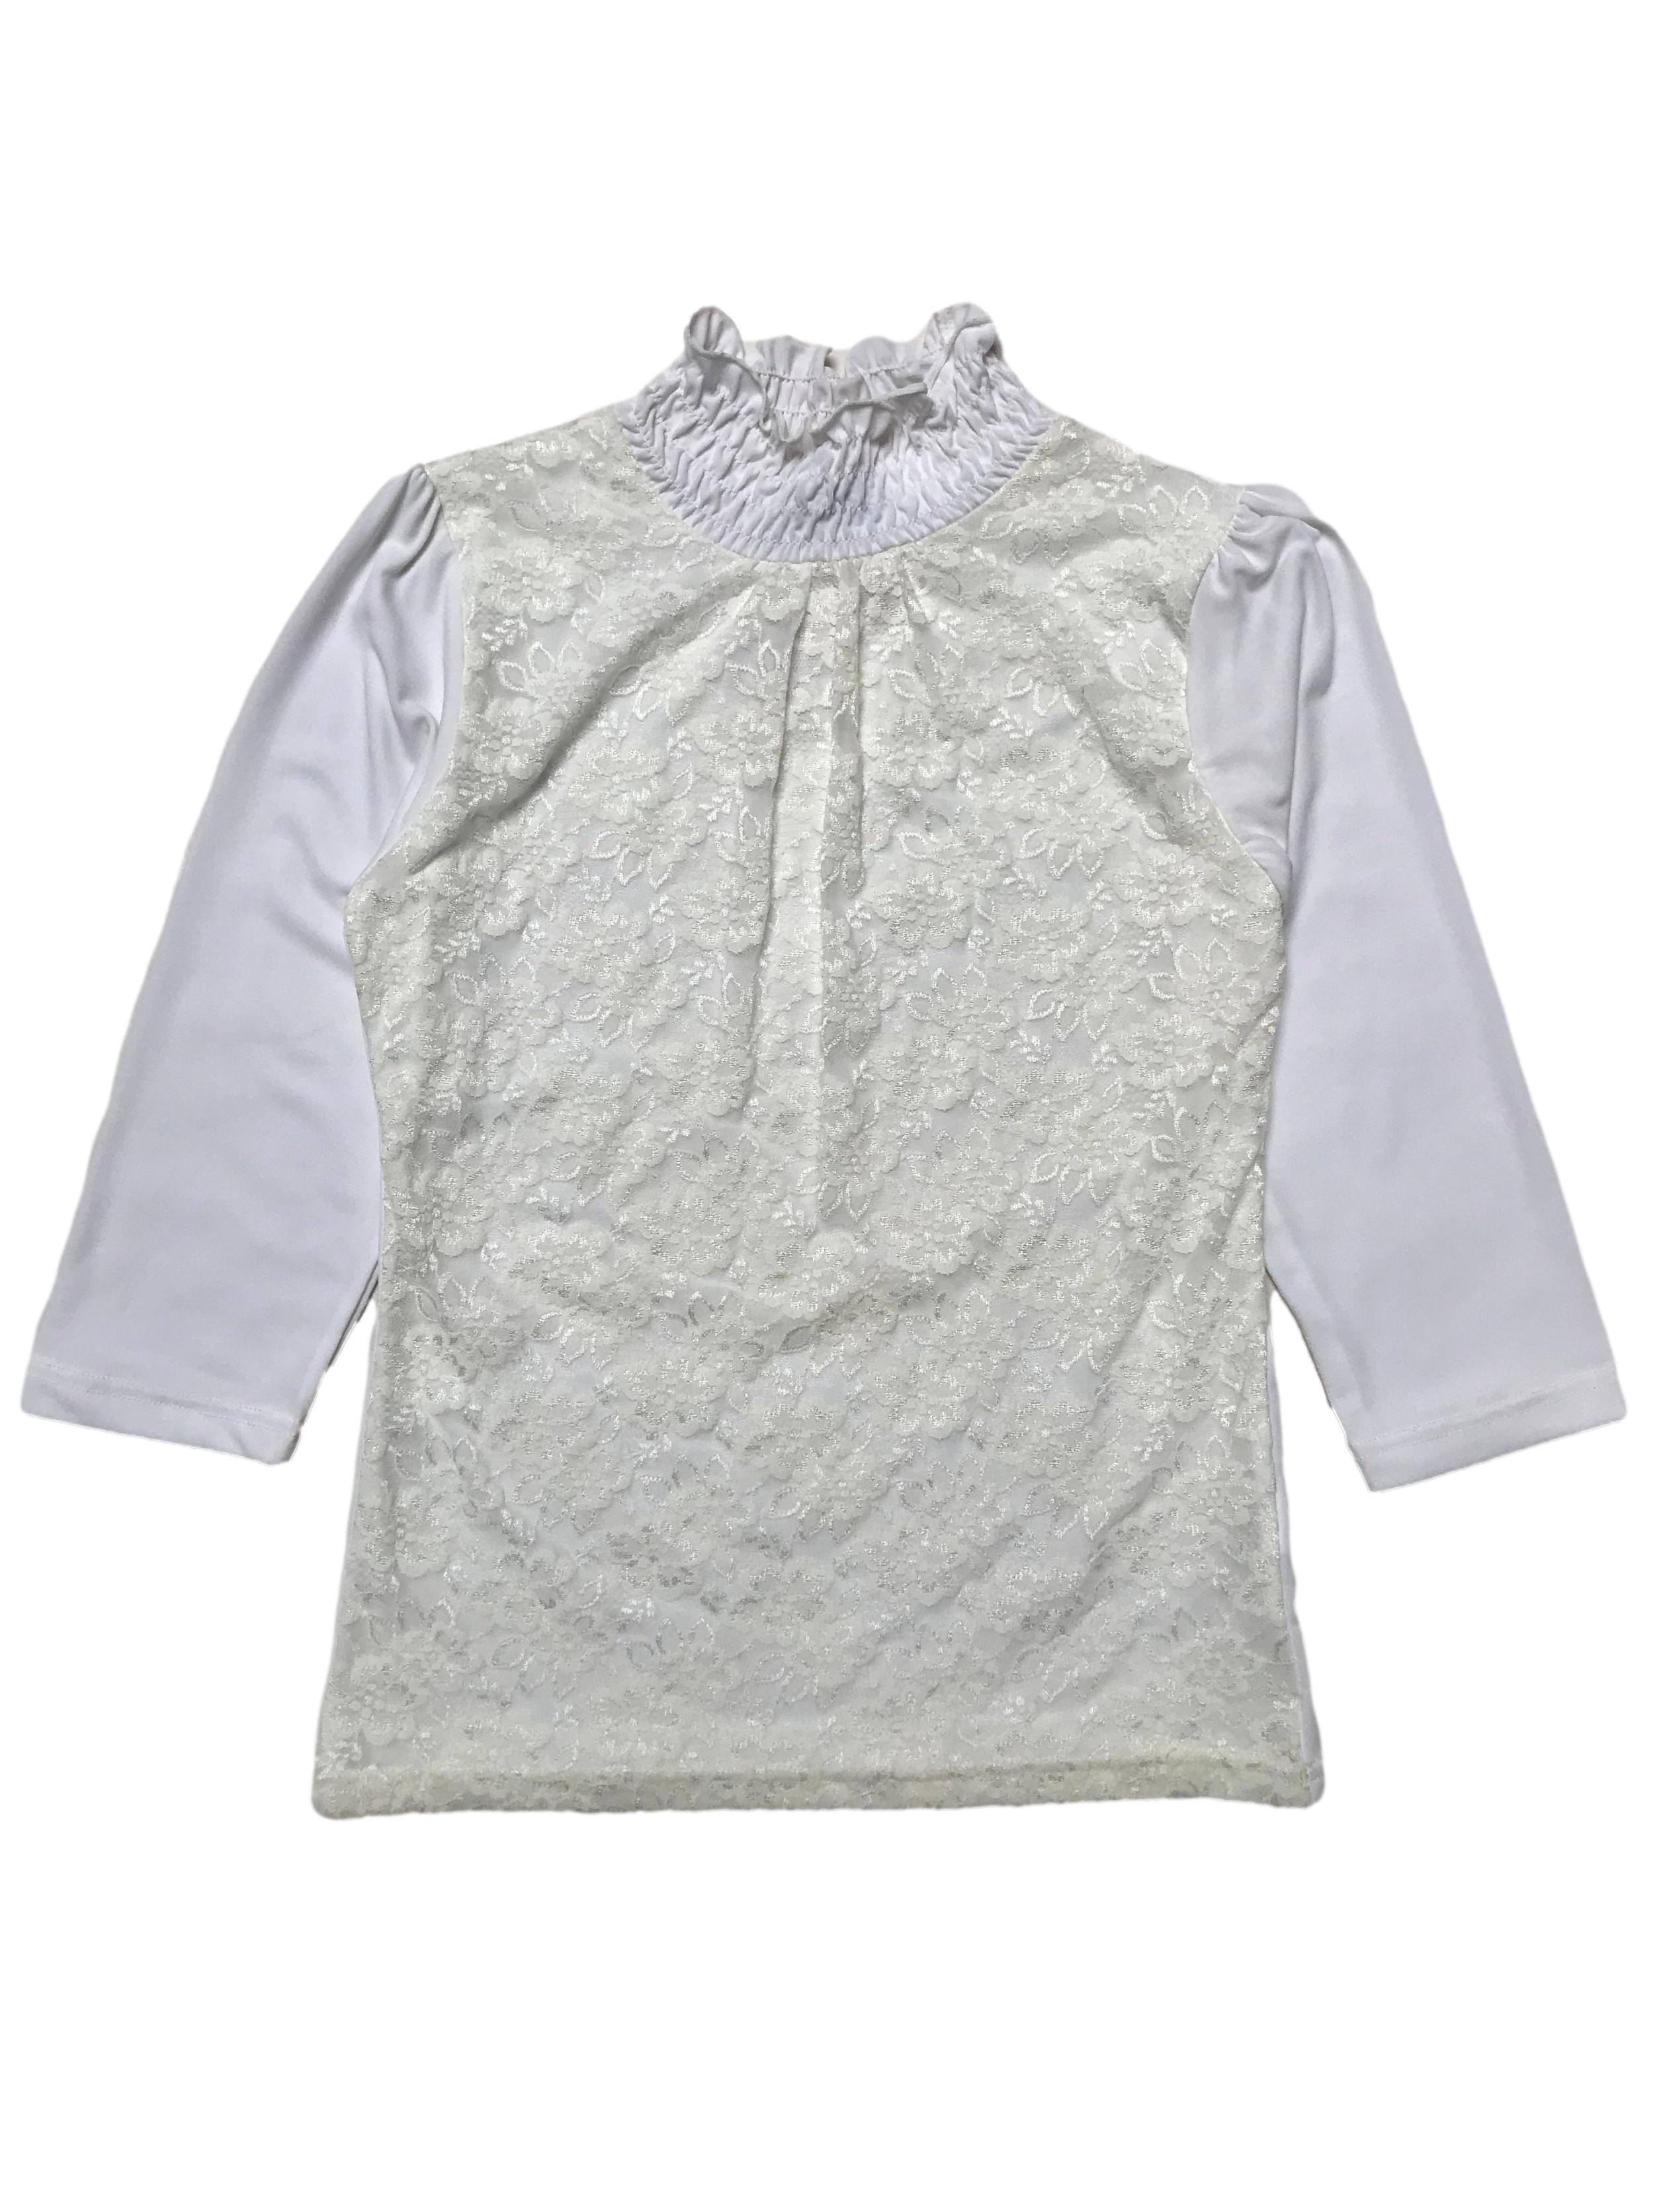 Blusa de lycra crema con delantero de encaje forrado, cuello alto y manga 3/4. Largo 55cm